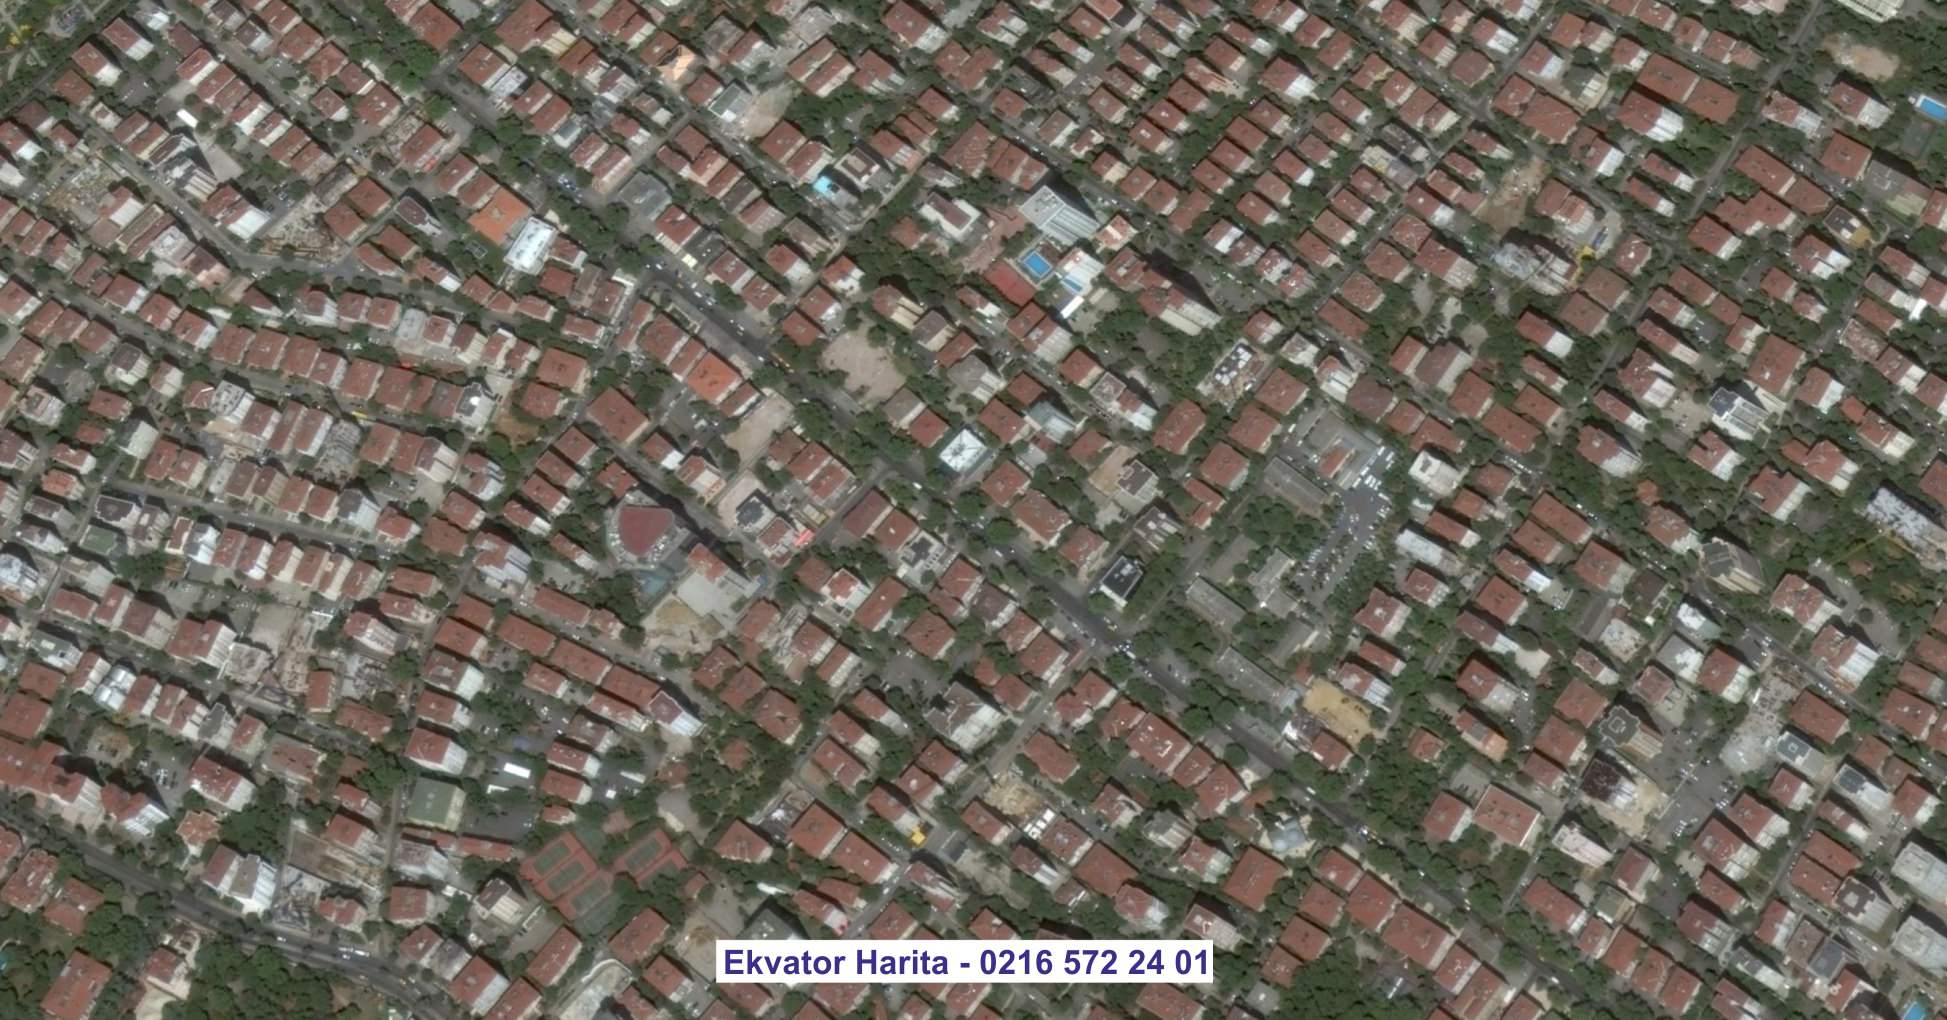 İzmit Uydu Görüntüsü Örnek Fotoğrafı